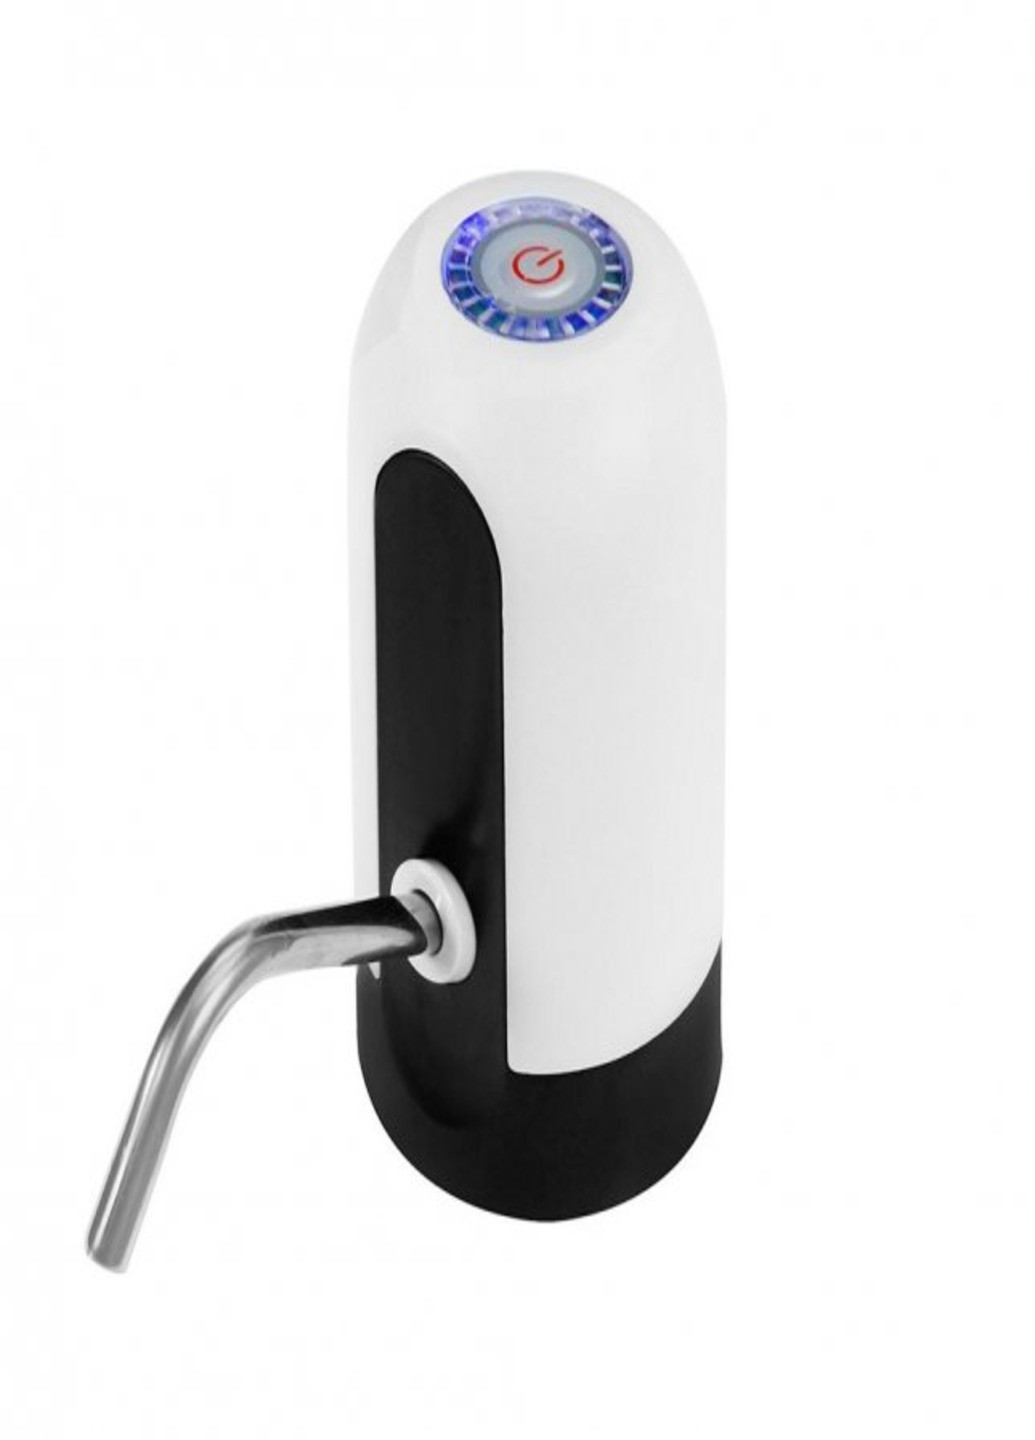 Электро помпа для бутилированной воды Water Dispenser EL-1014 электрическая аккумуляторная на бутыль (1007570-Other-1) Art (253996515)